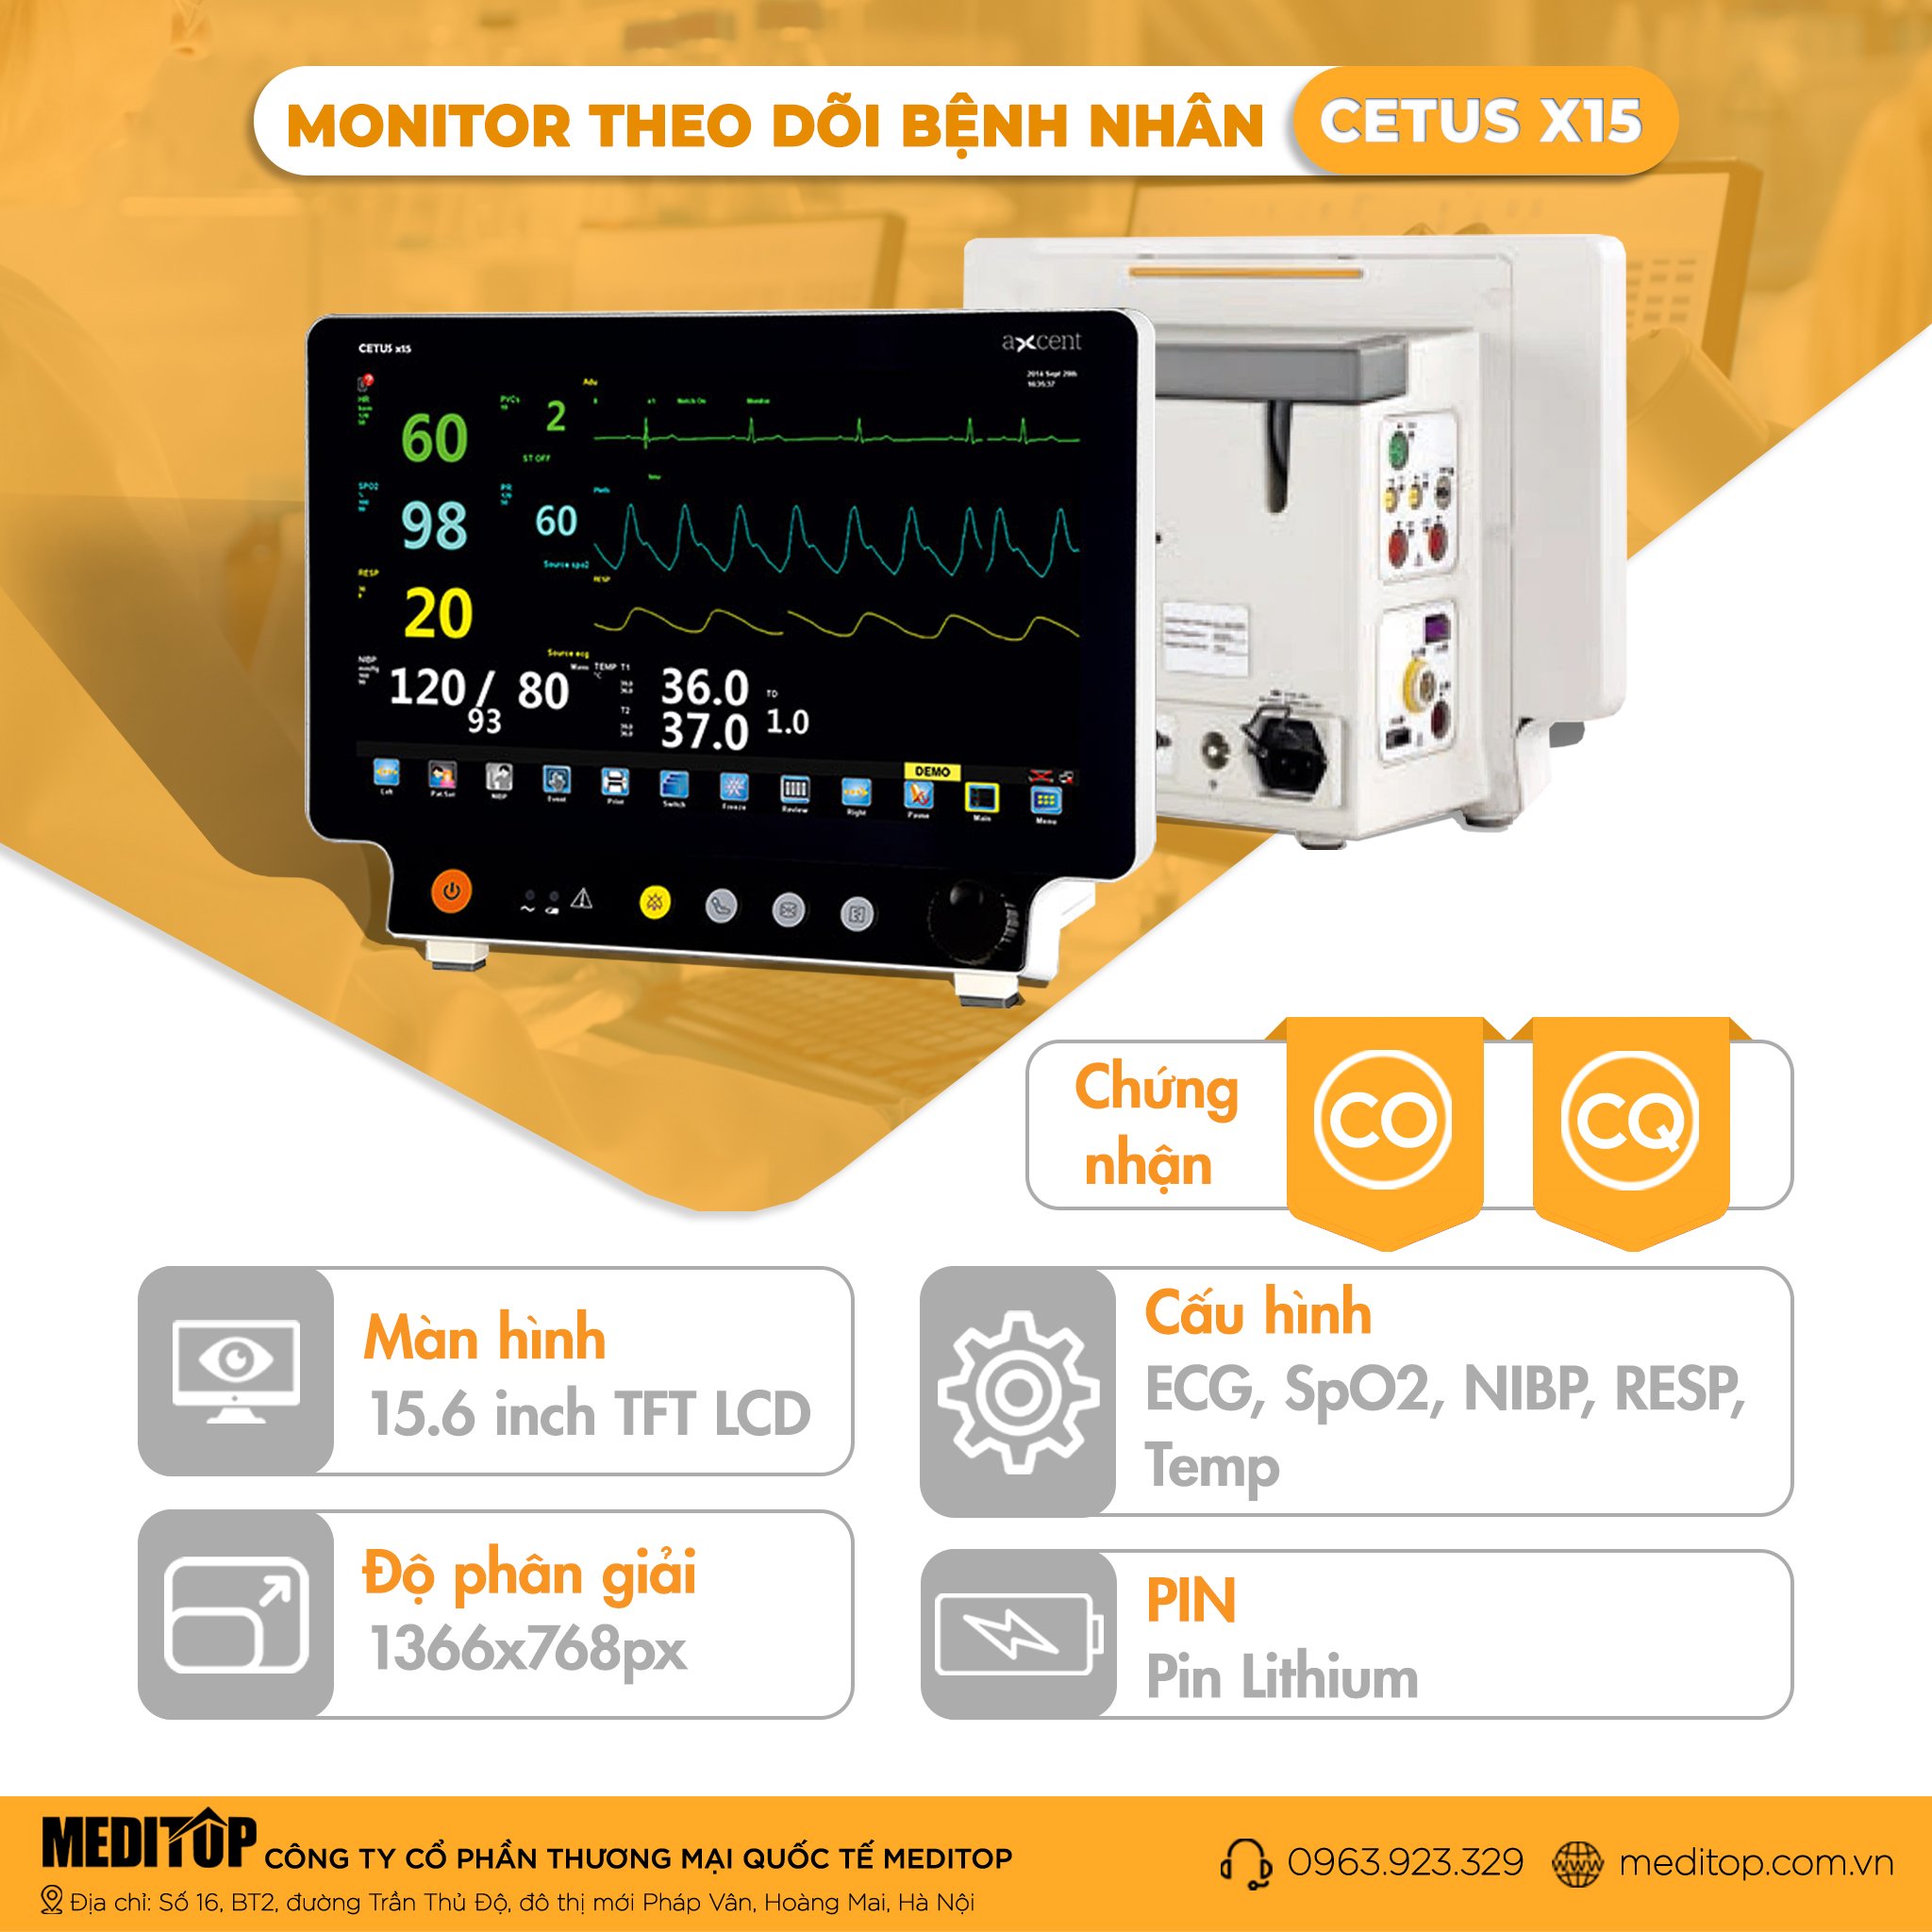 Monitor 5 thông số theo dõi bệnh nhân Cetus X15, Đức